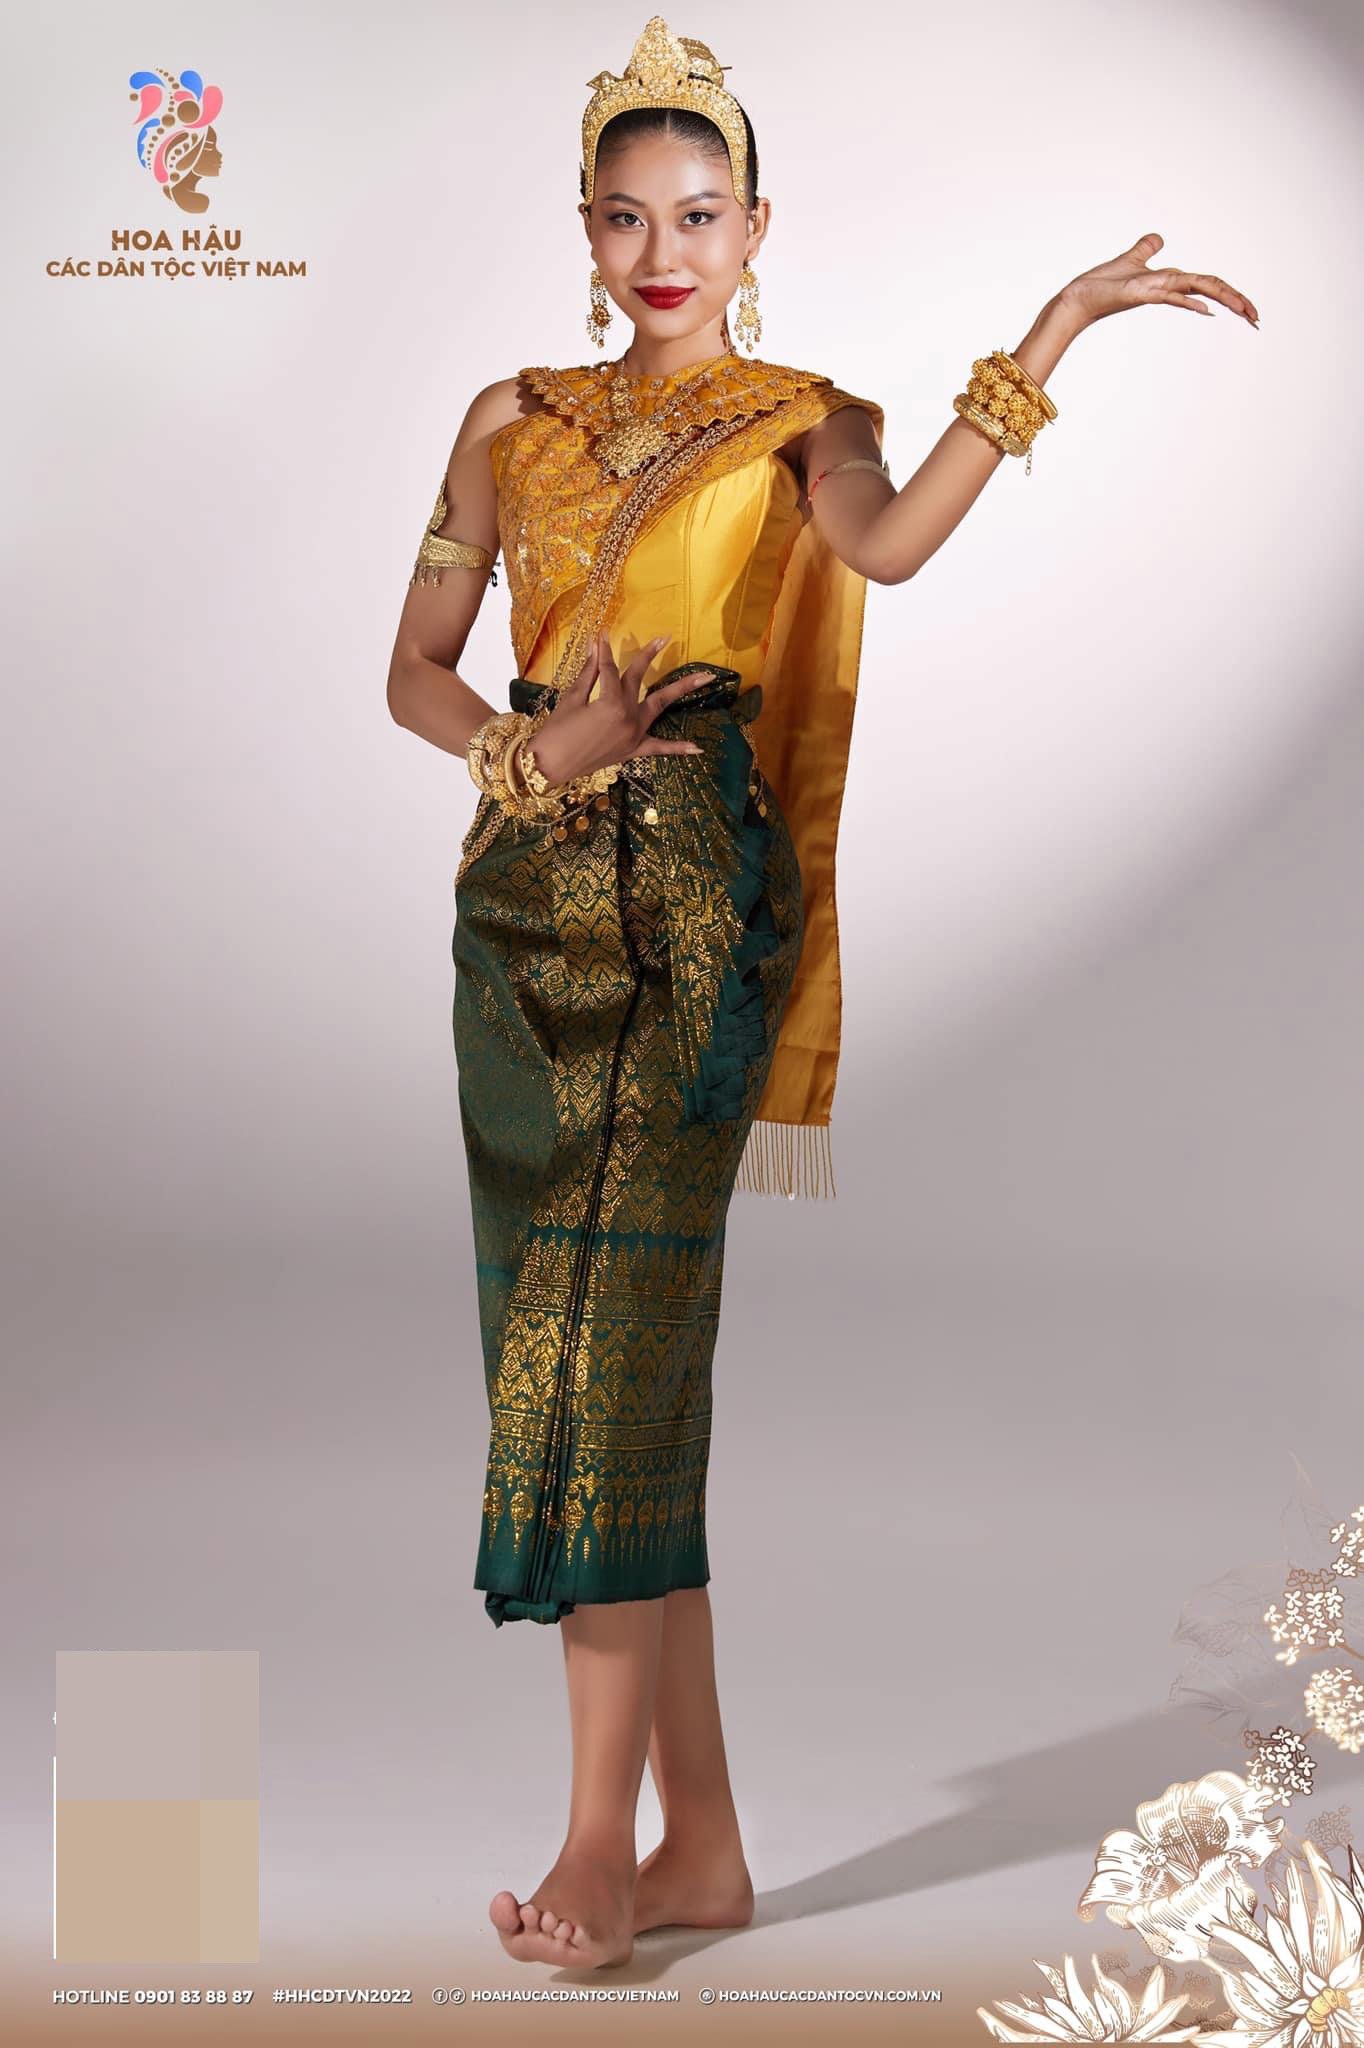 Nữ sinh diện trang phục truyền thống Khmer nổi bật nhất Hoa hậu các Dân tộc Việt Nam - 3